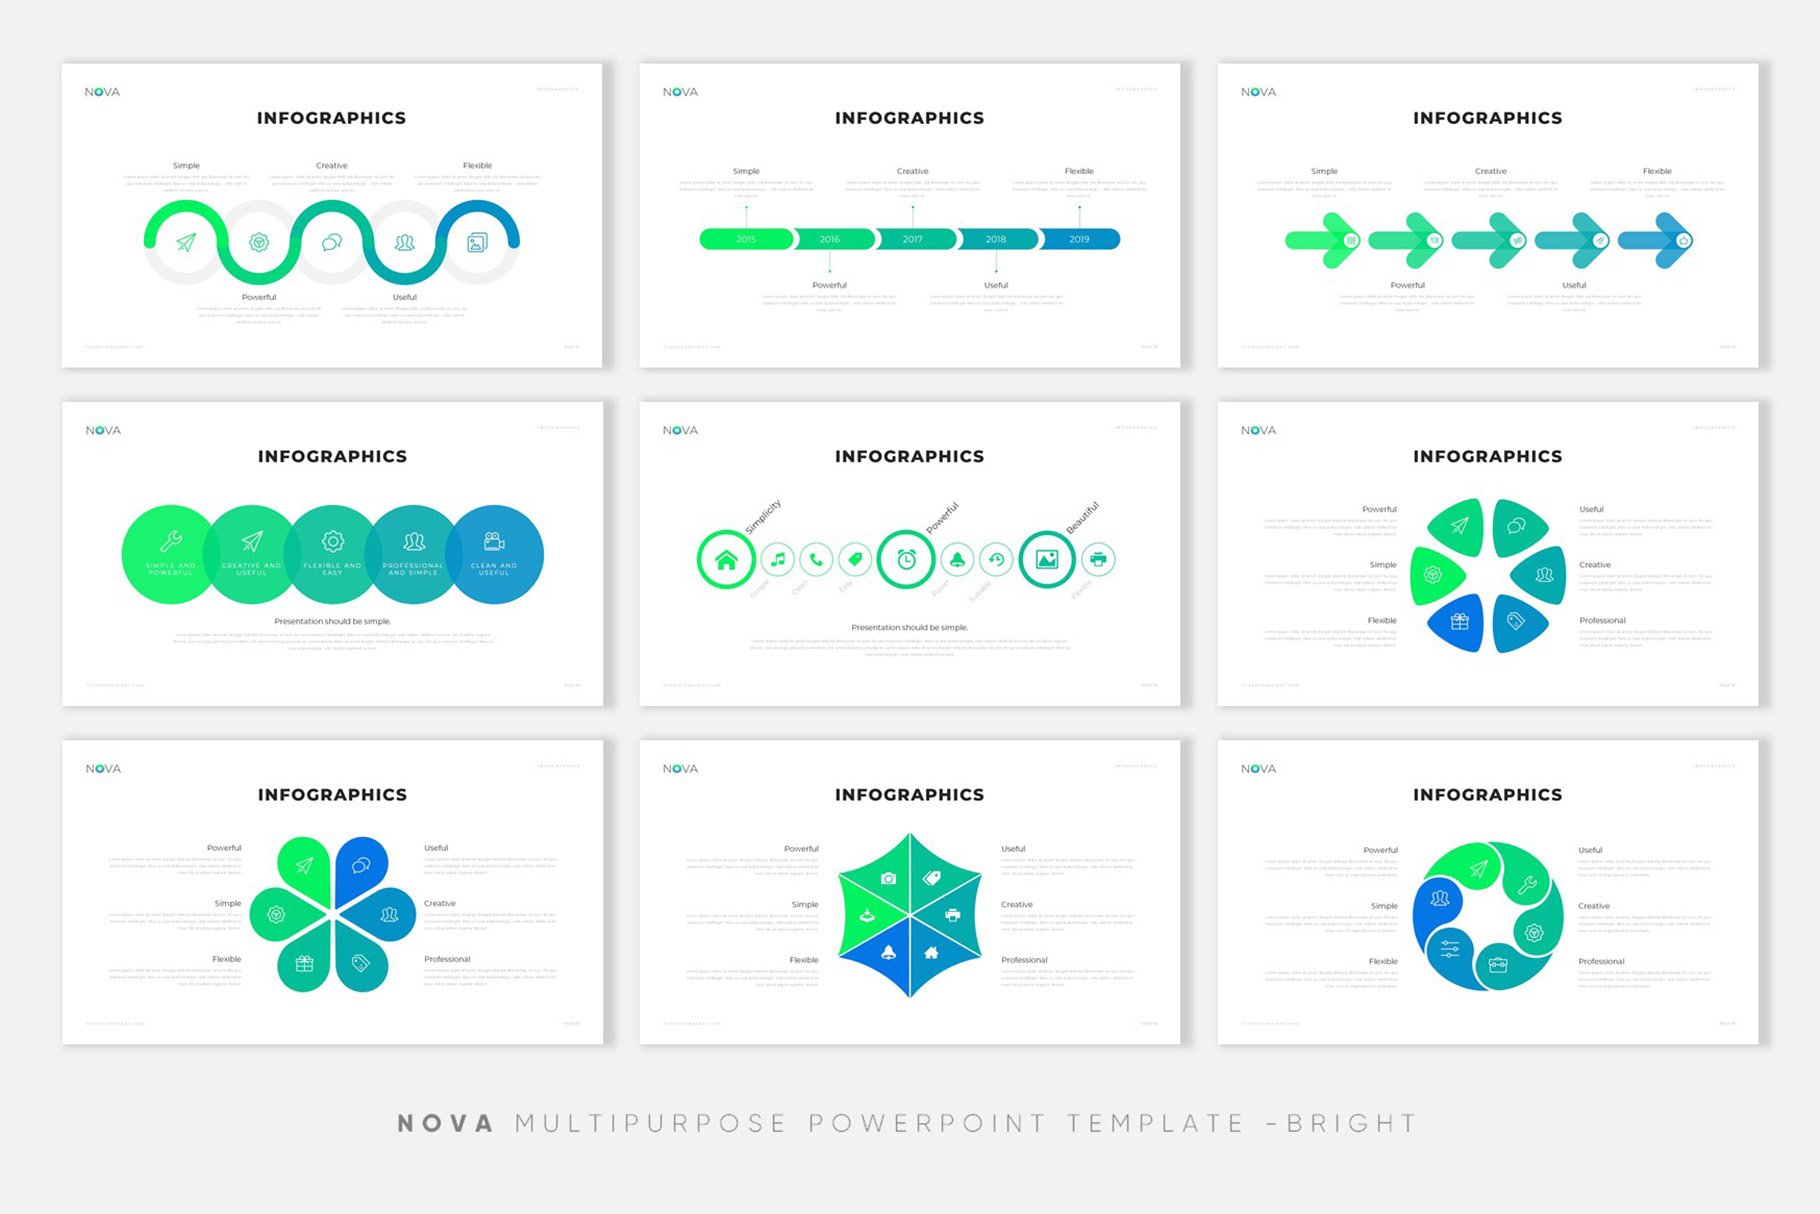 极简公司介绍项目业务策划PPT模板 NOVA Creative PowerPoint Template插图9